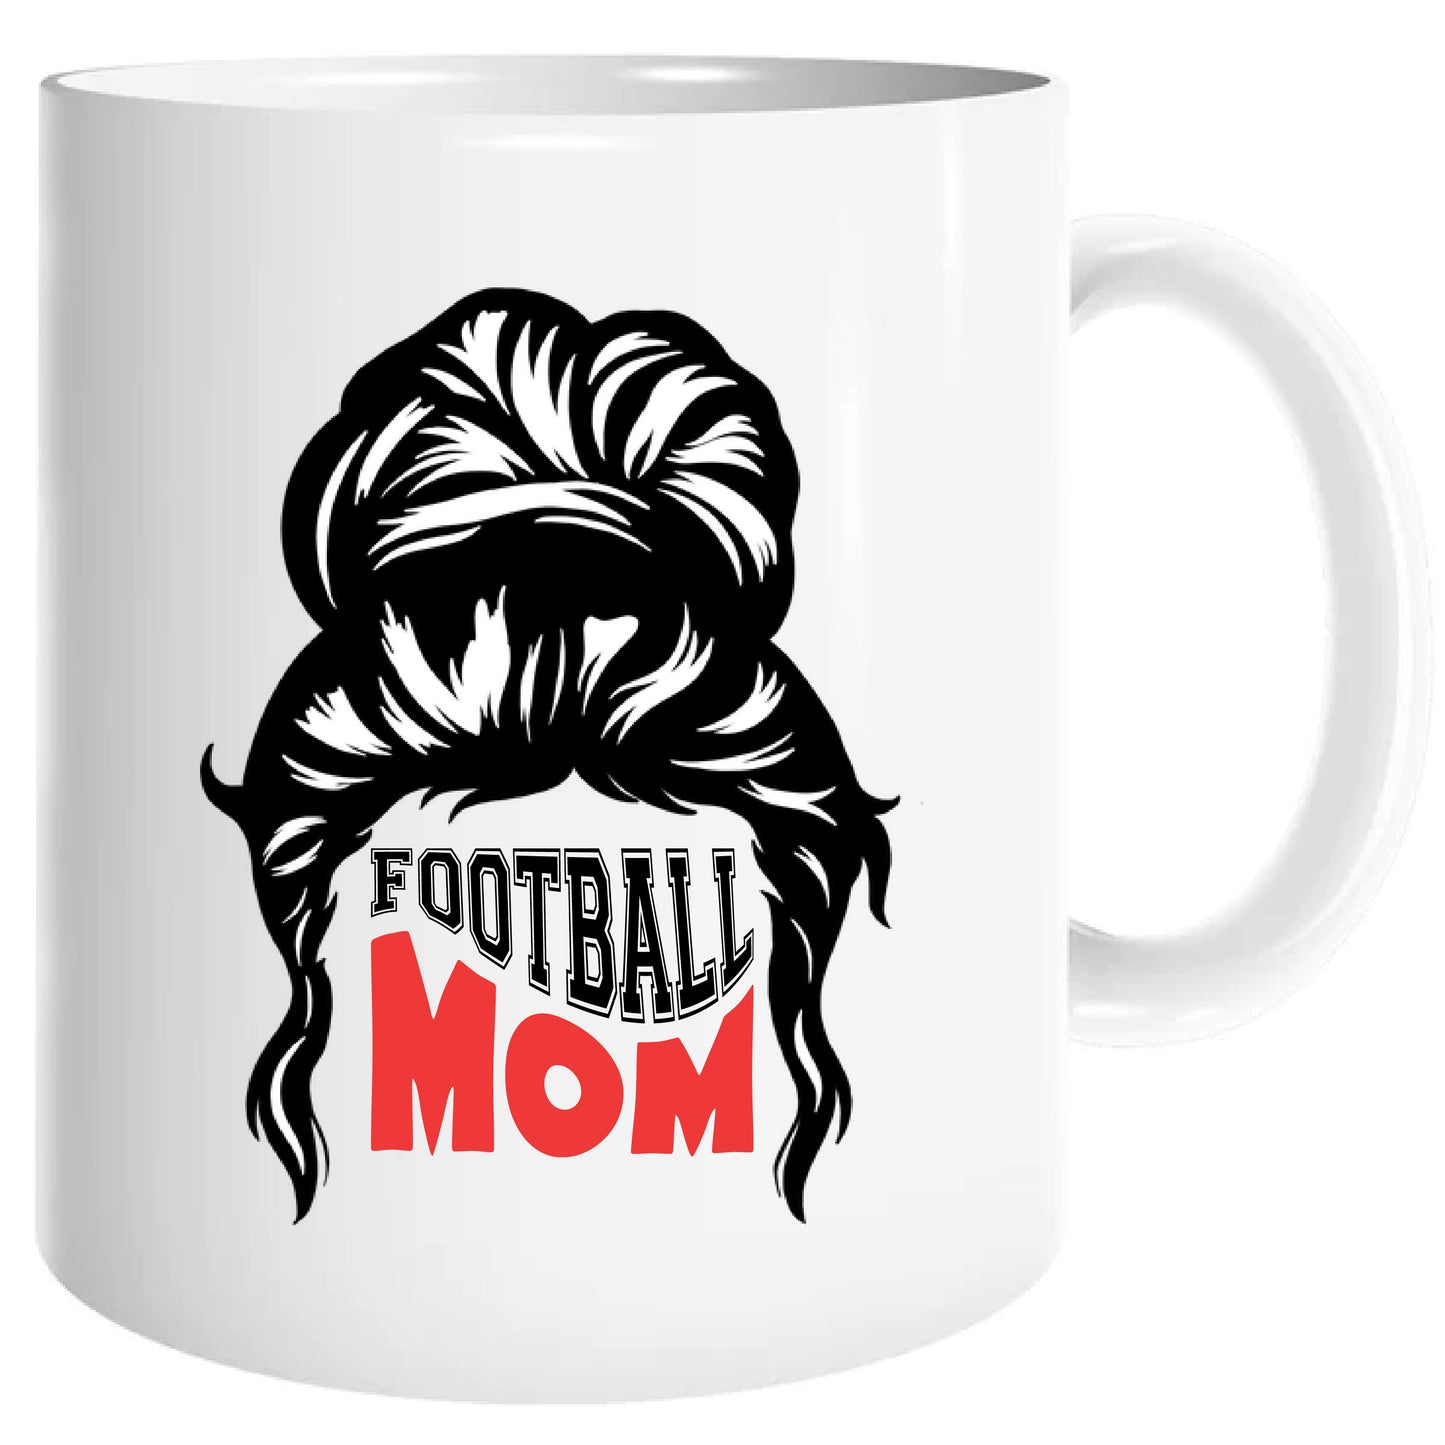 Football mom mug